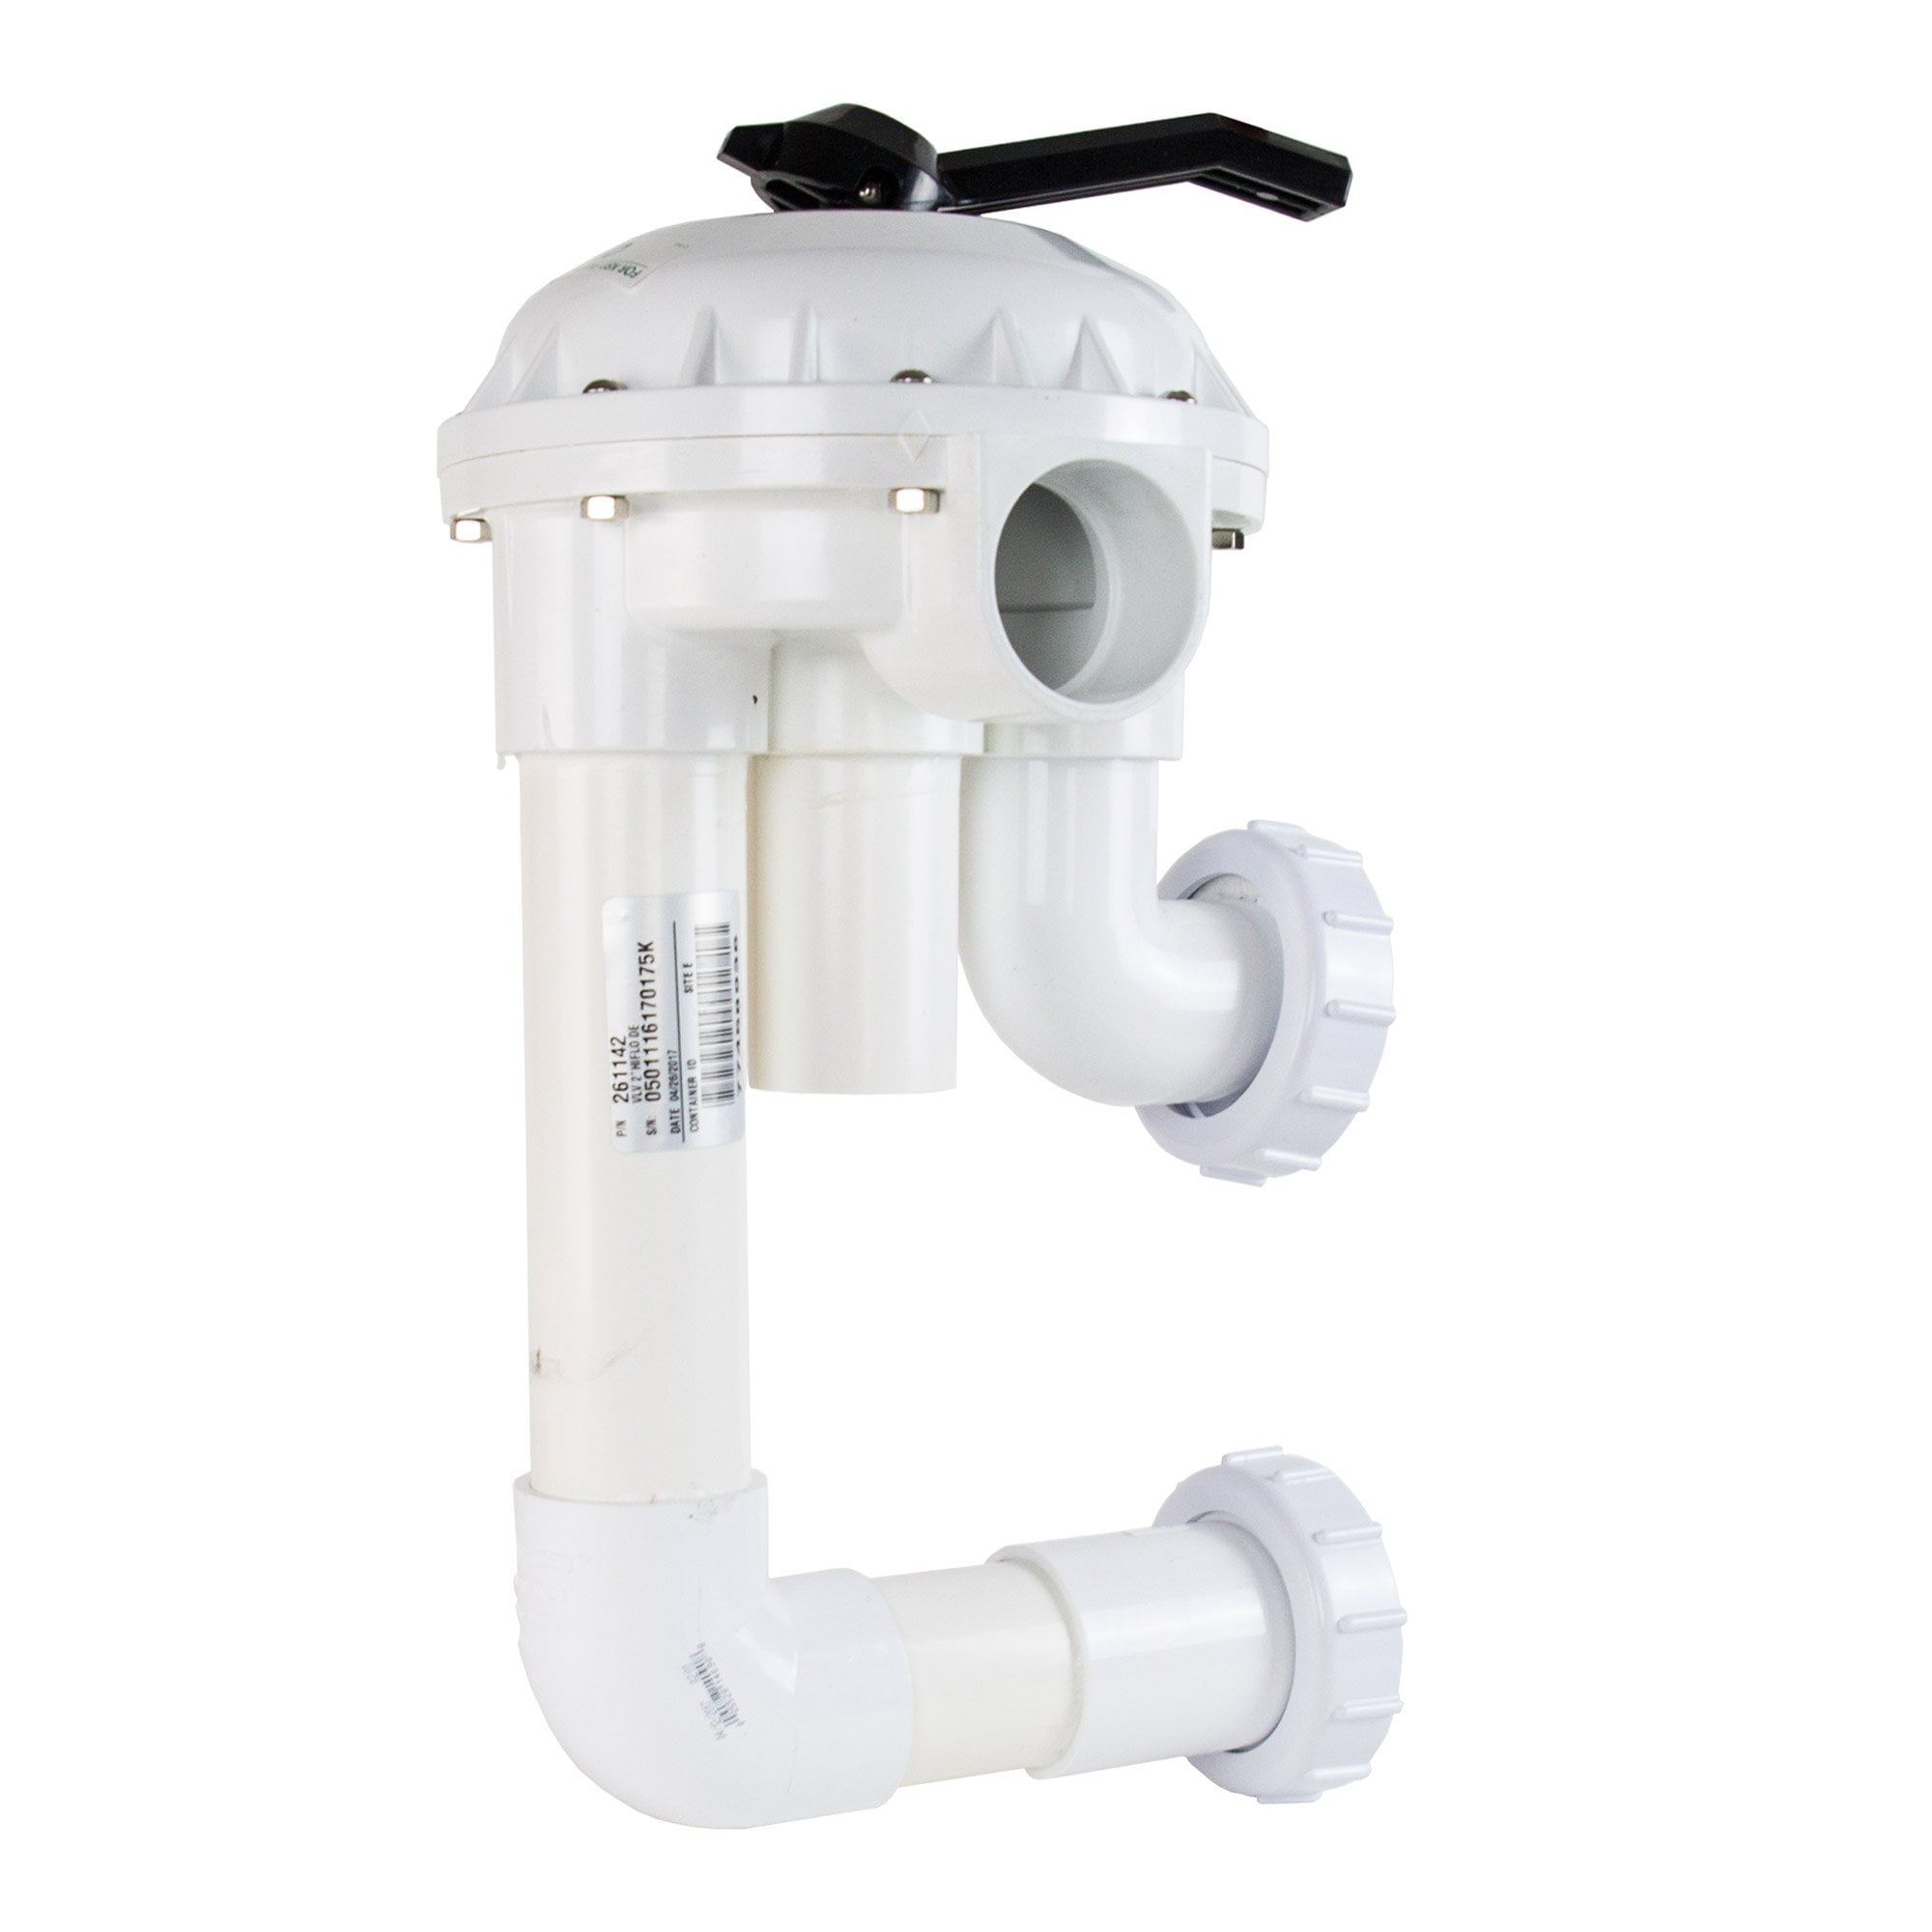 pentair-hi-flow-2-sand-de-filter-backwash-valve-kit-for-above